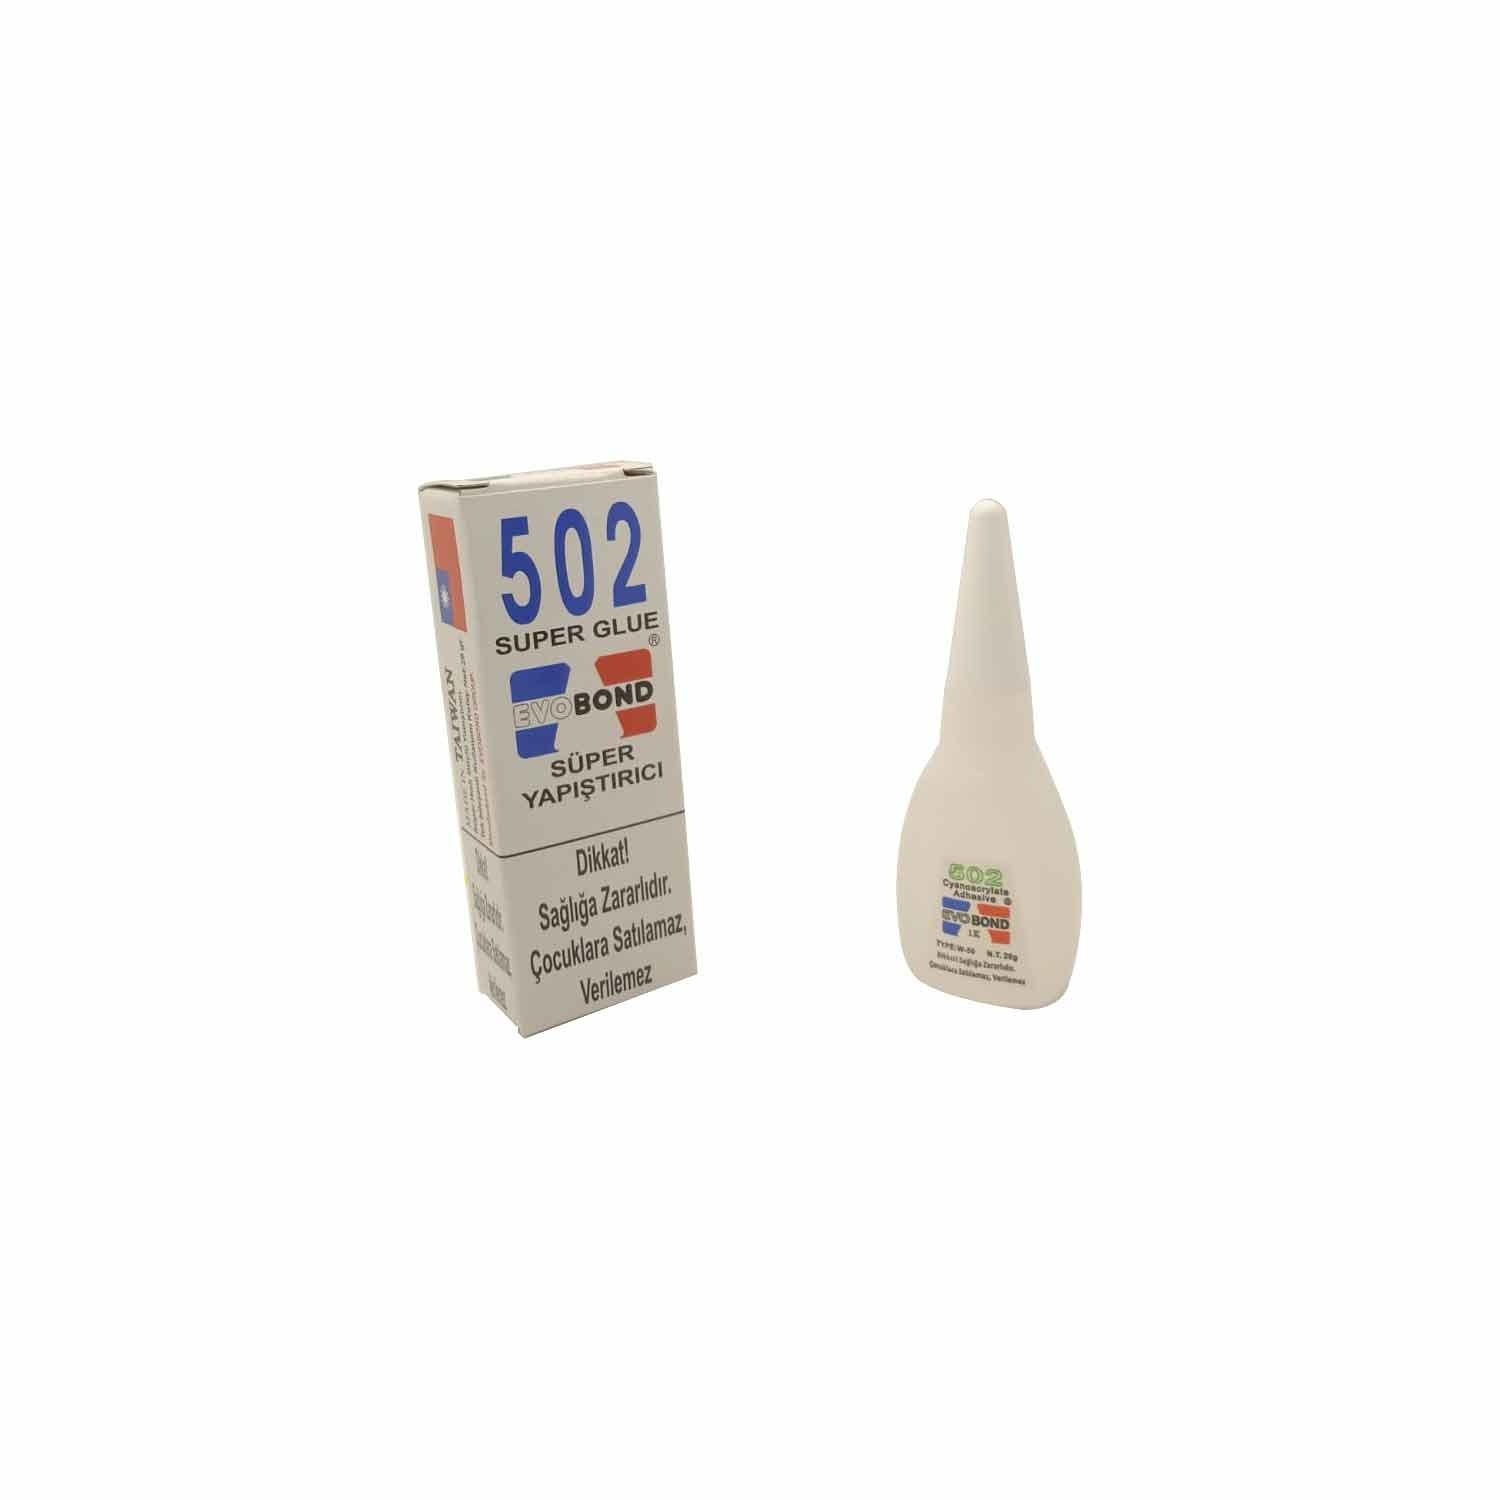 Evobond 502 Super Glue Japon Yapıştırıcısı (1 Adet)